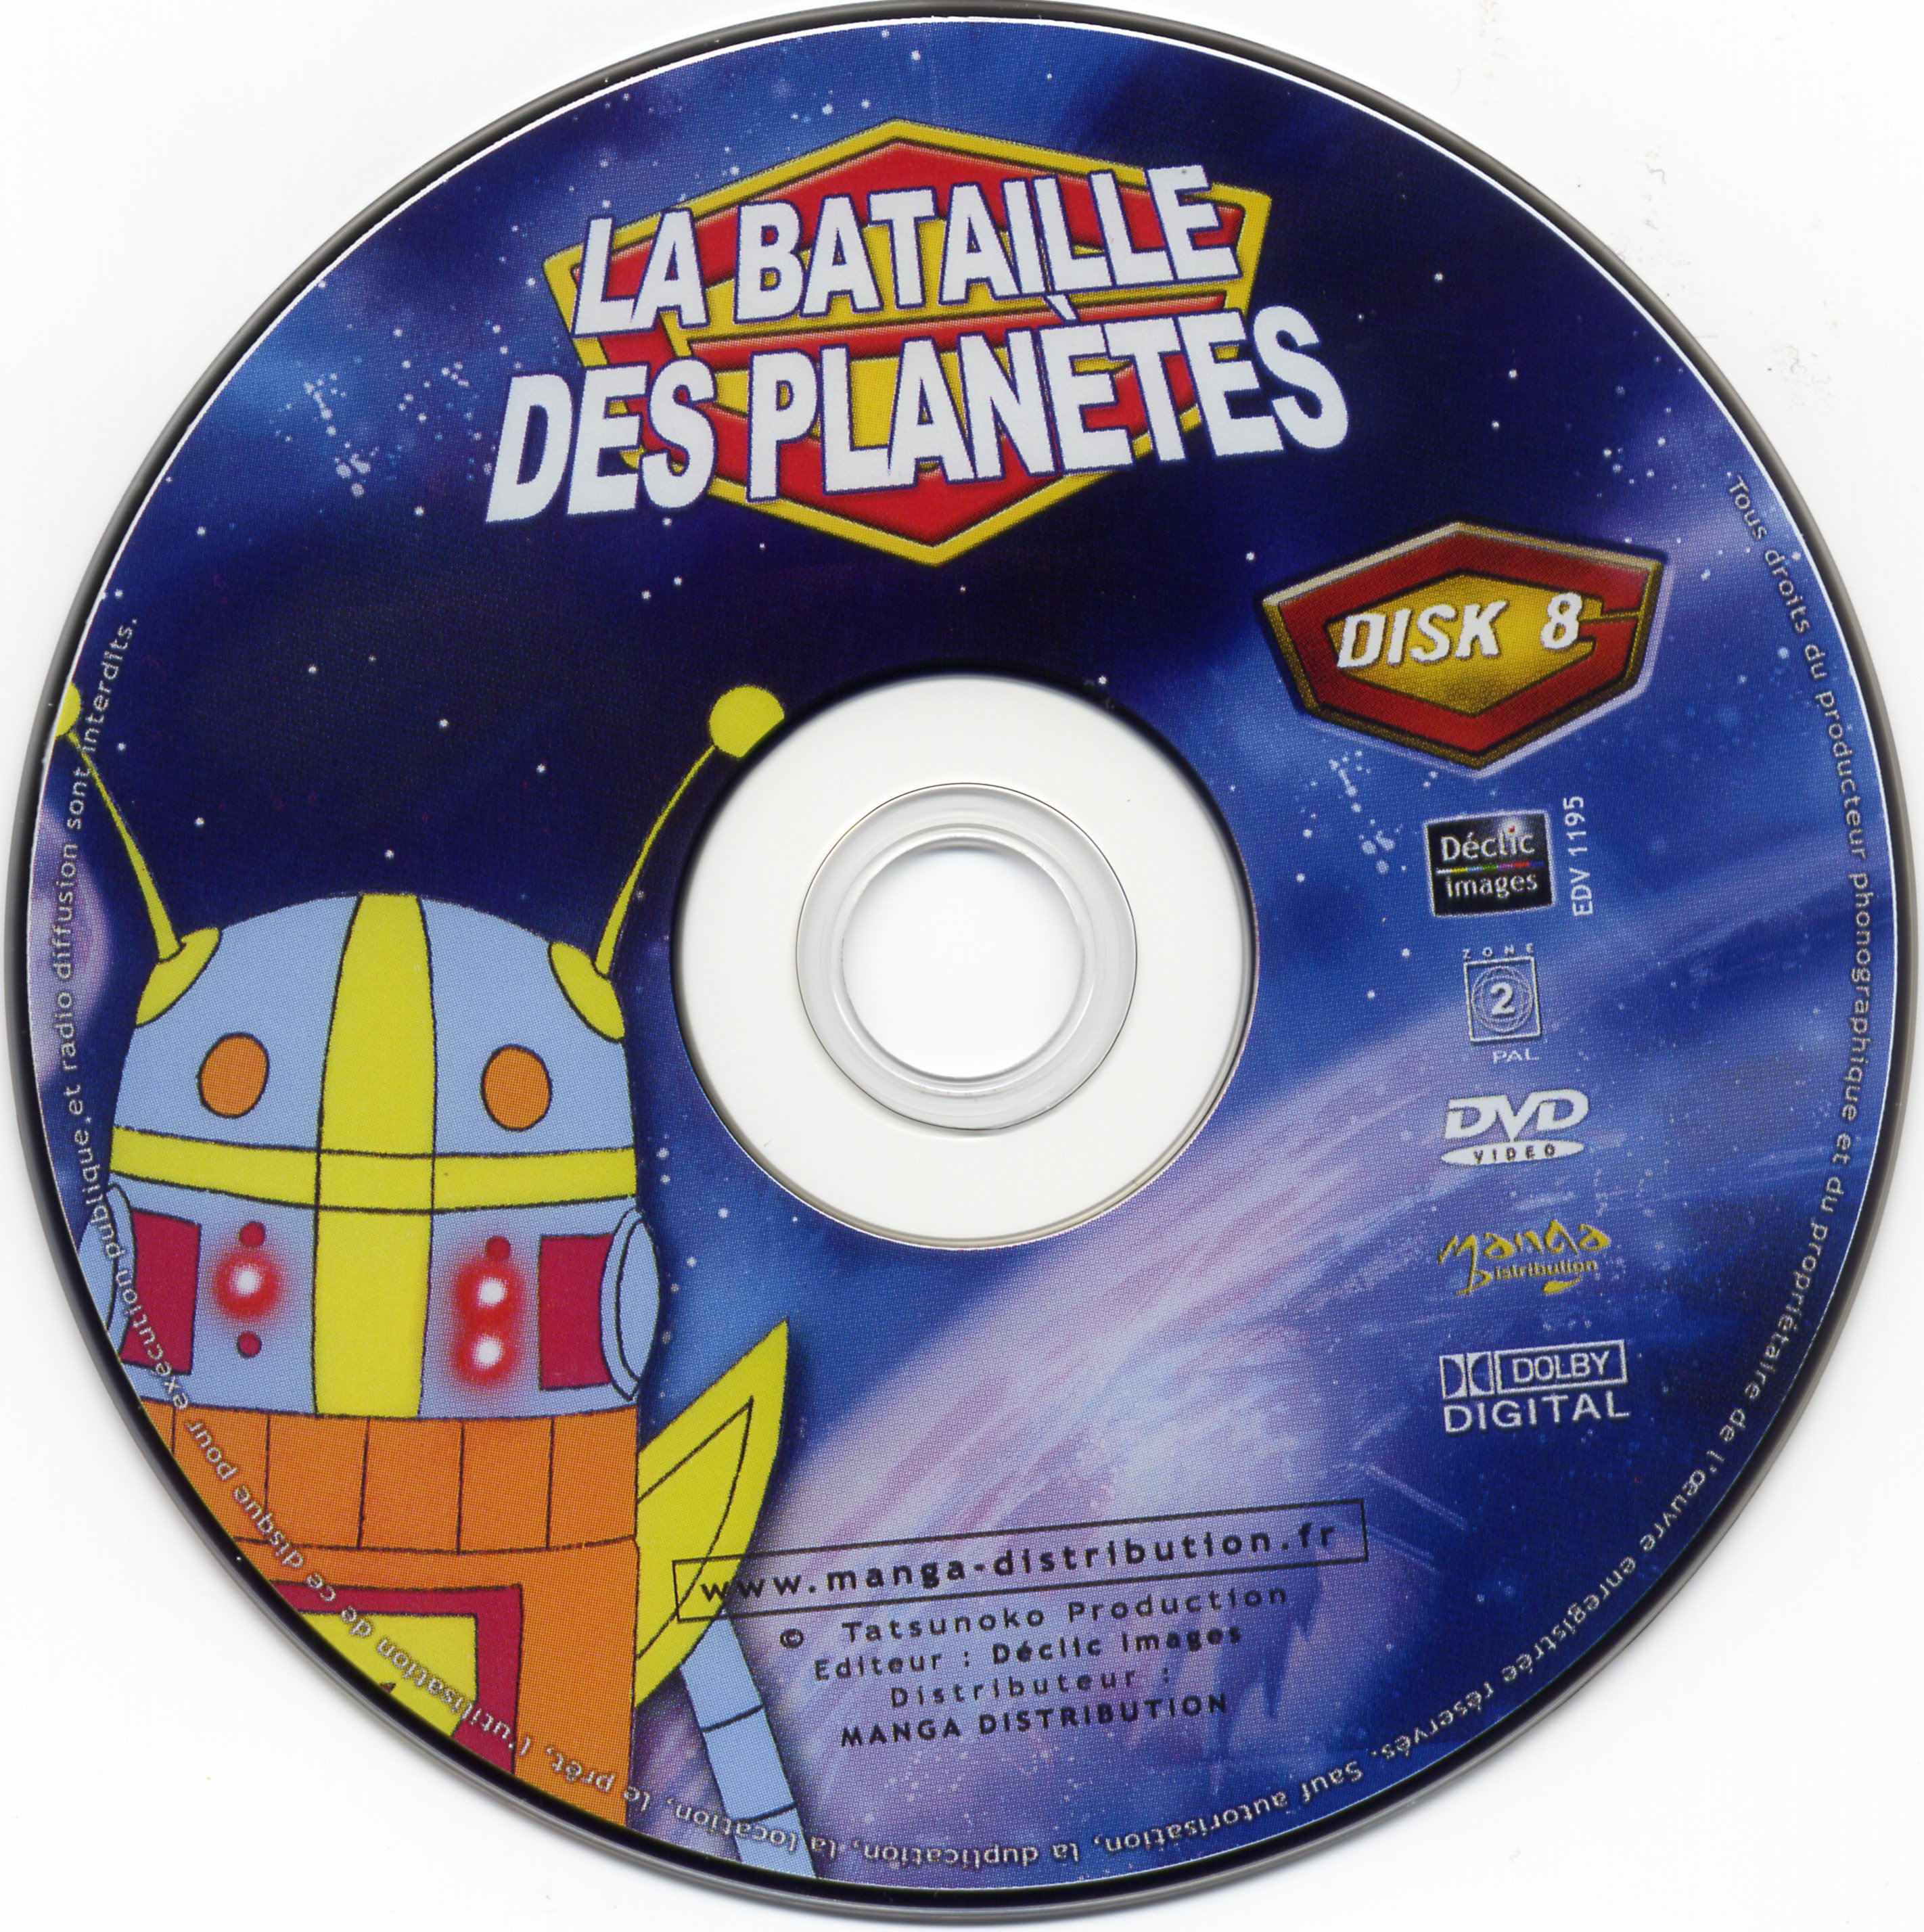 La bataille des planetes DVD 08